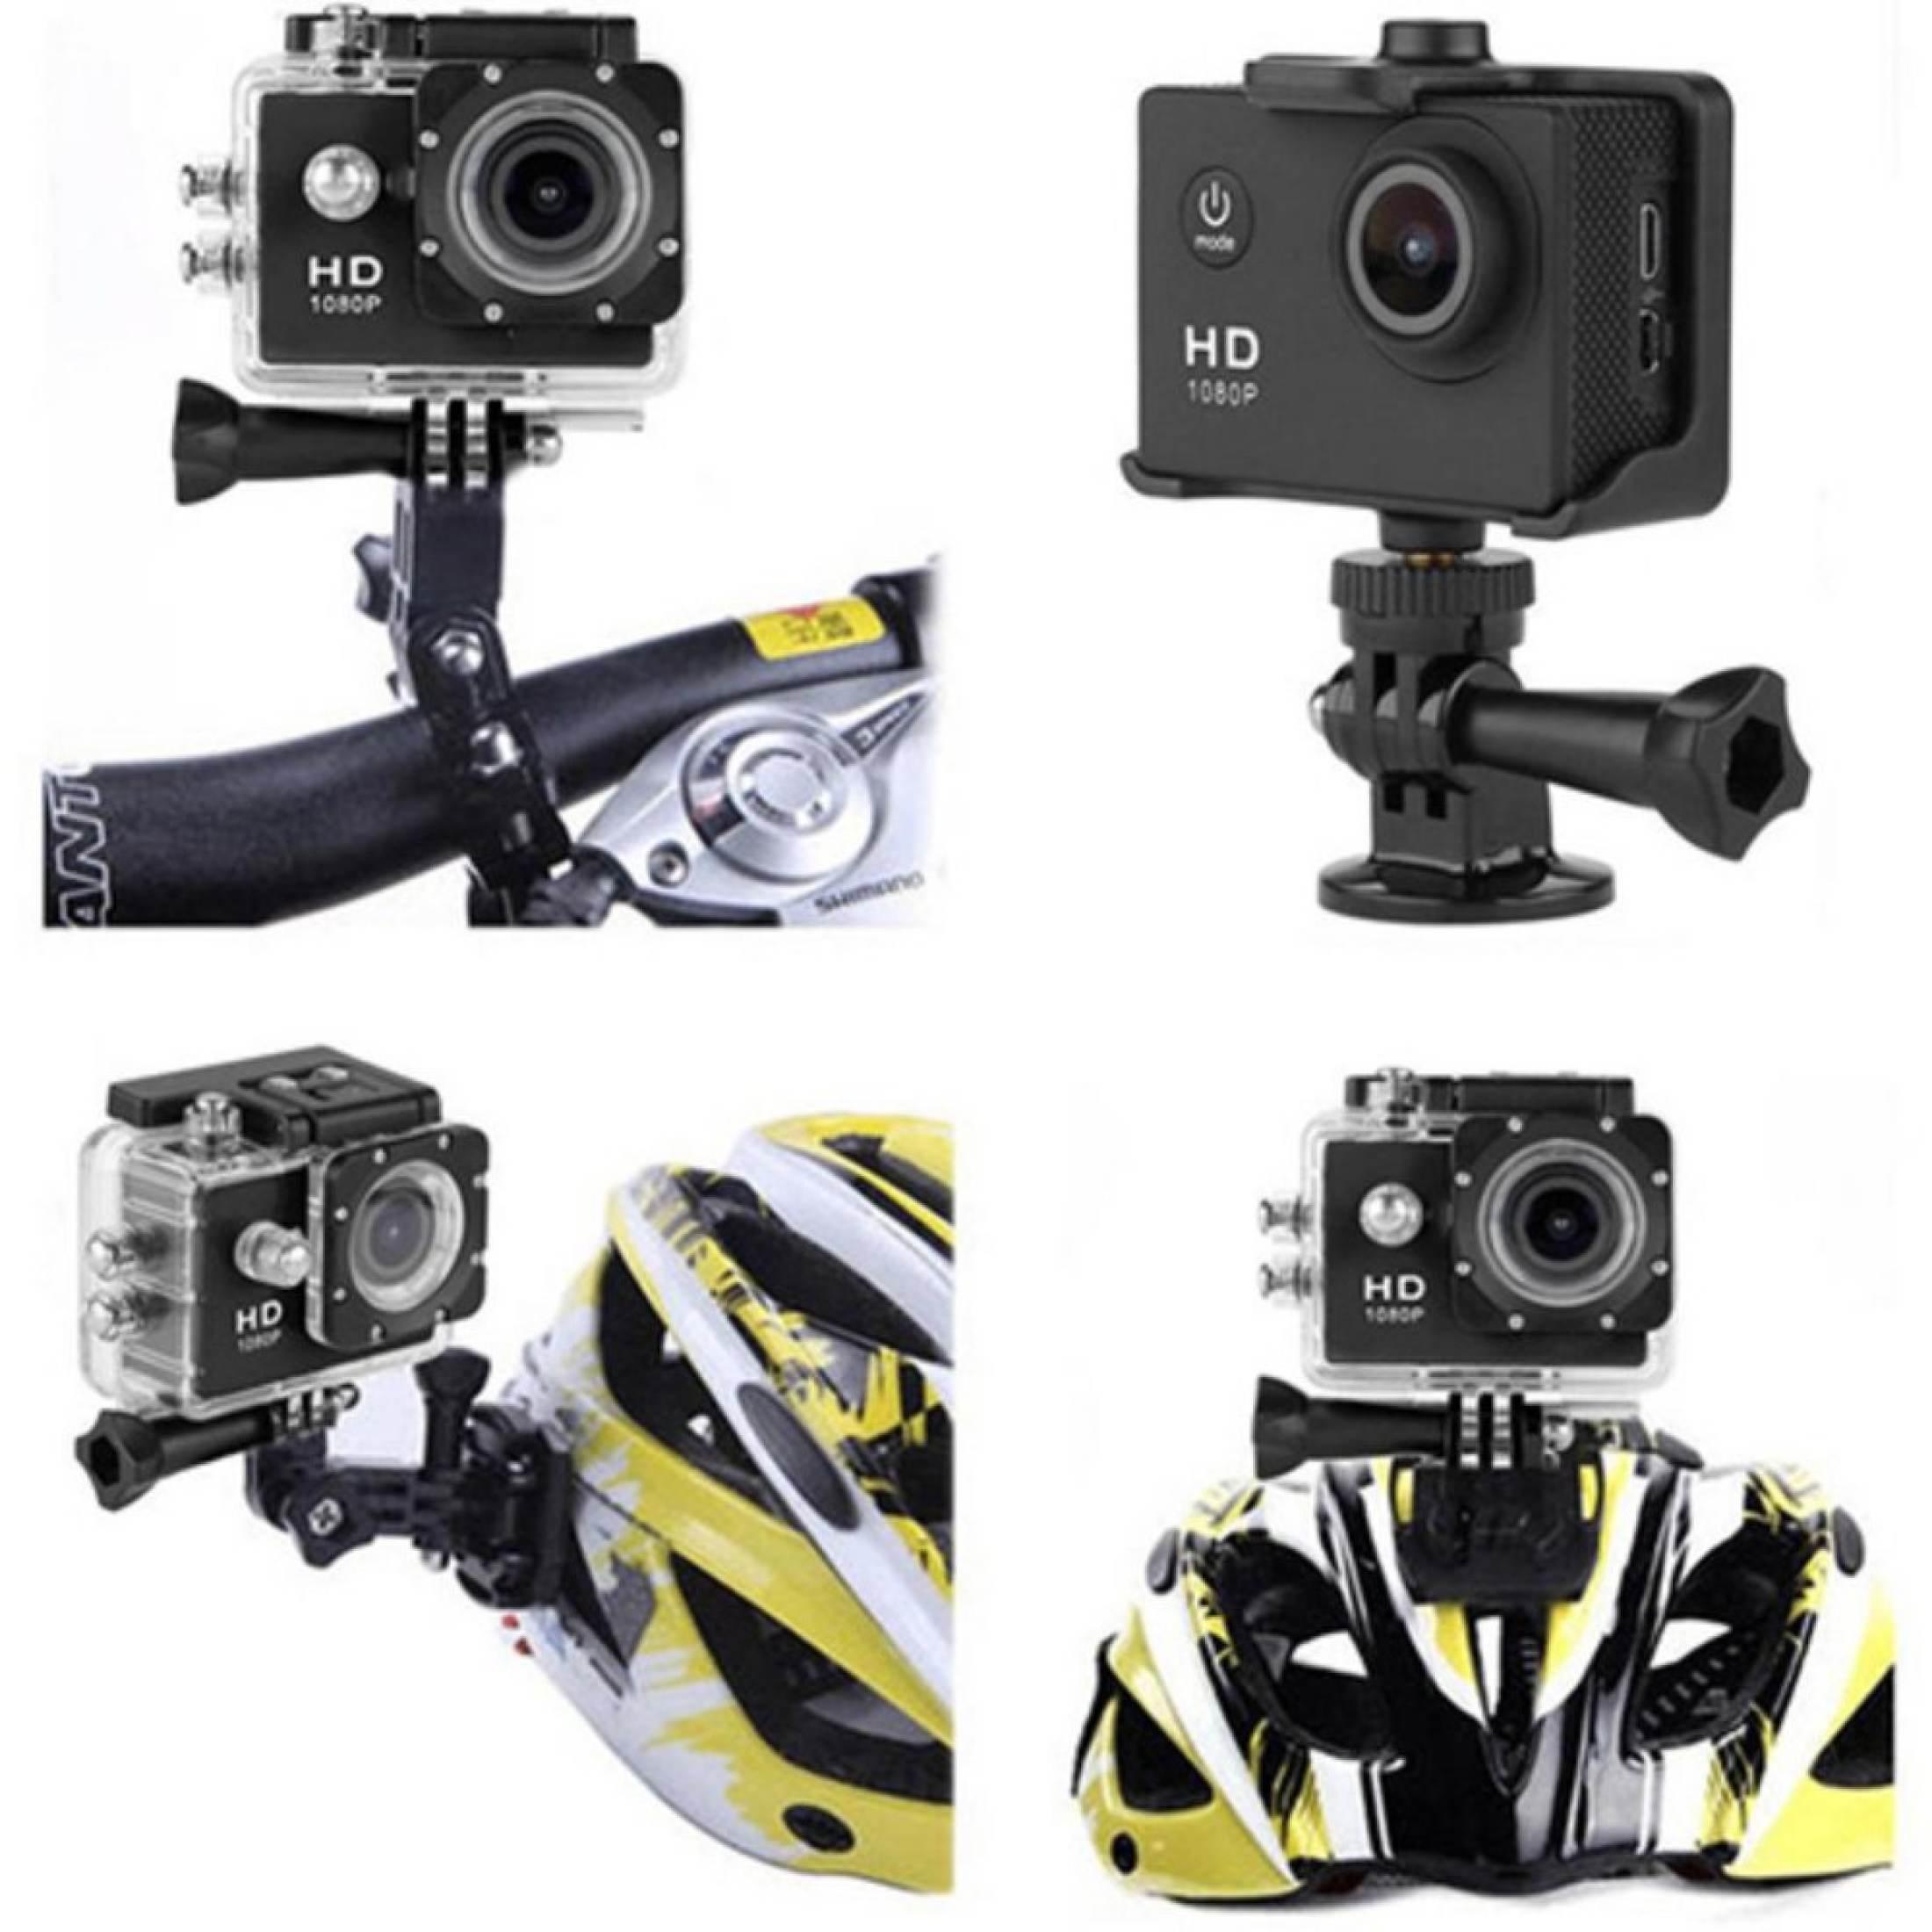 ข้อมูลเกี่ยวกับ ขายดีสุด！！！！ กล้องจักรยาน action cam กันน้ำ 30m + Full HD (สีดำ) กล้องติดรถจักรยาน กล้องติดหมวก กล้องติดรถมอเตอร์ไซต์